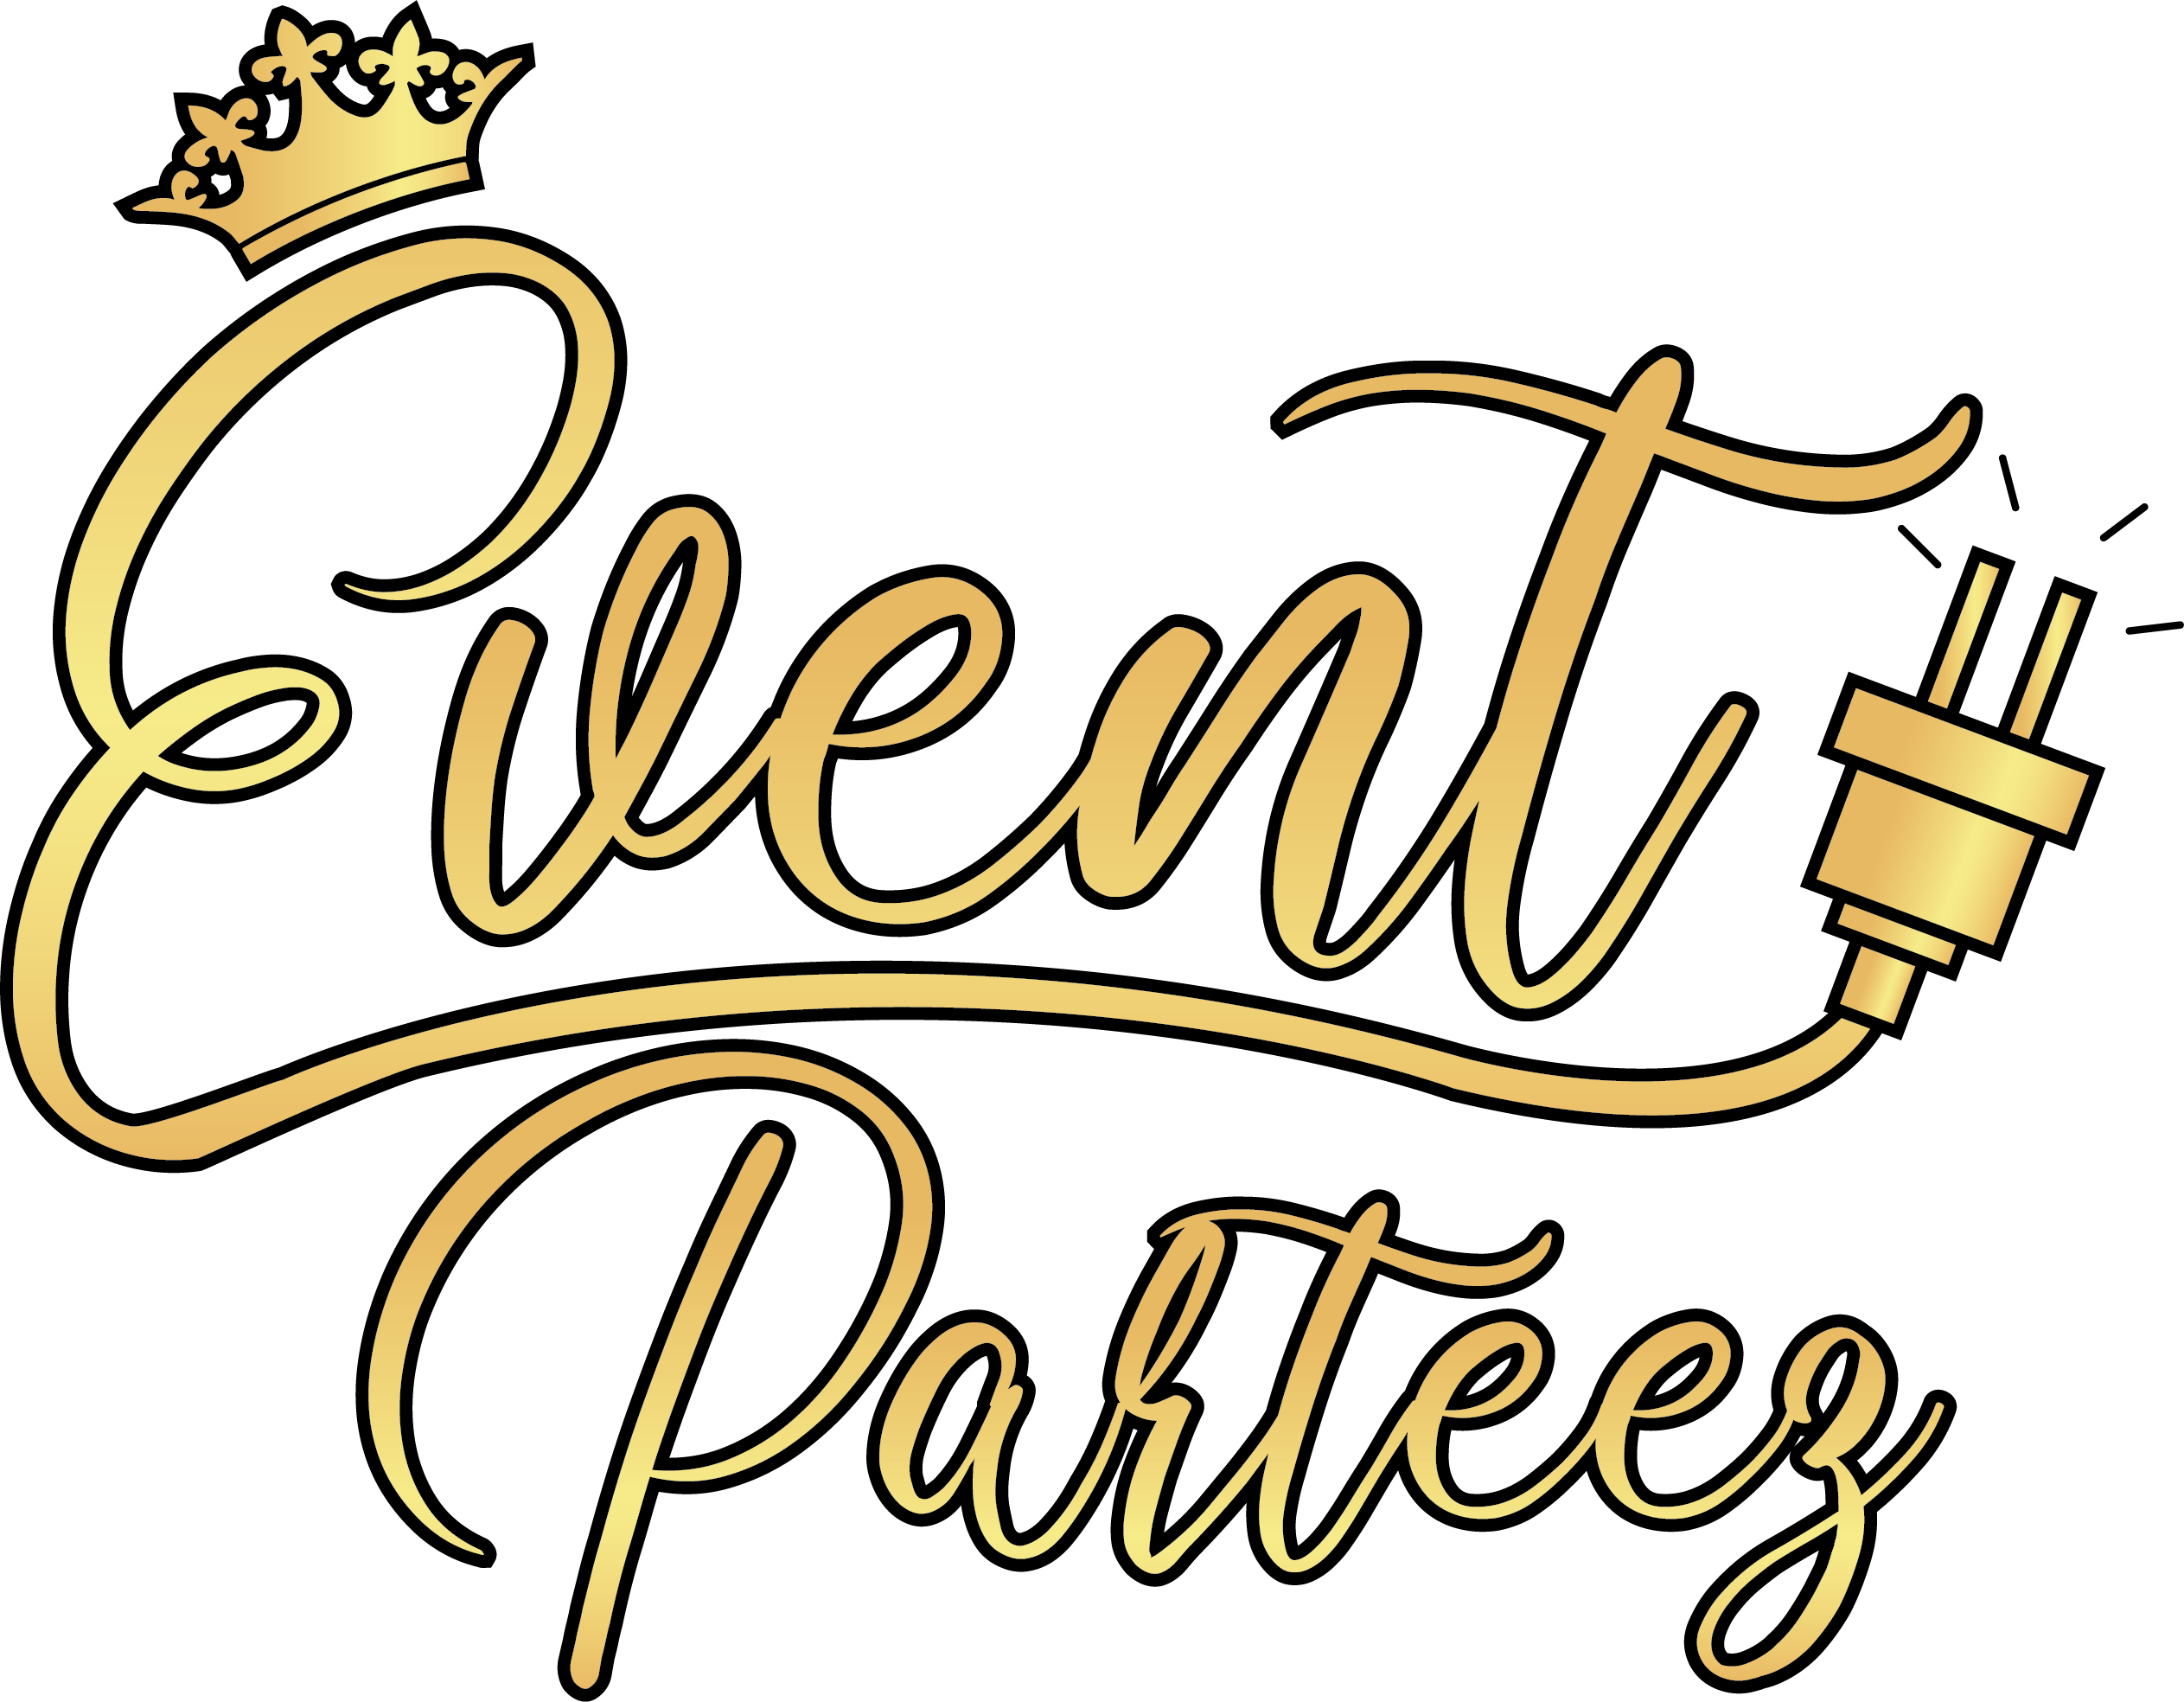 Event Parteez  - Let's Celebrate